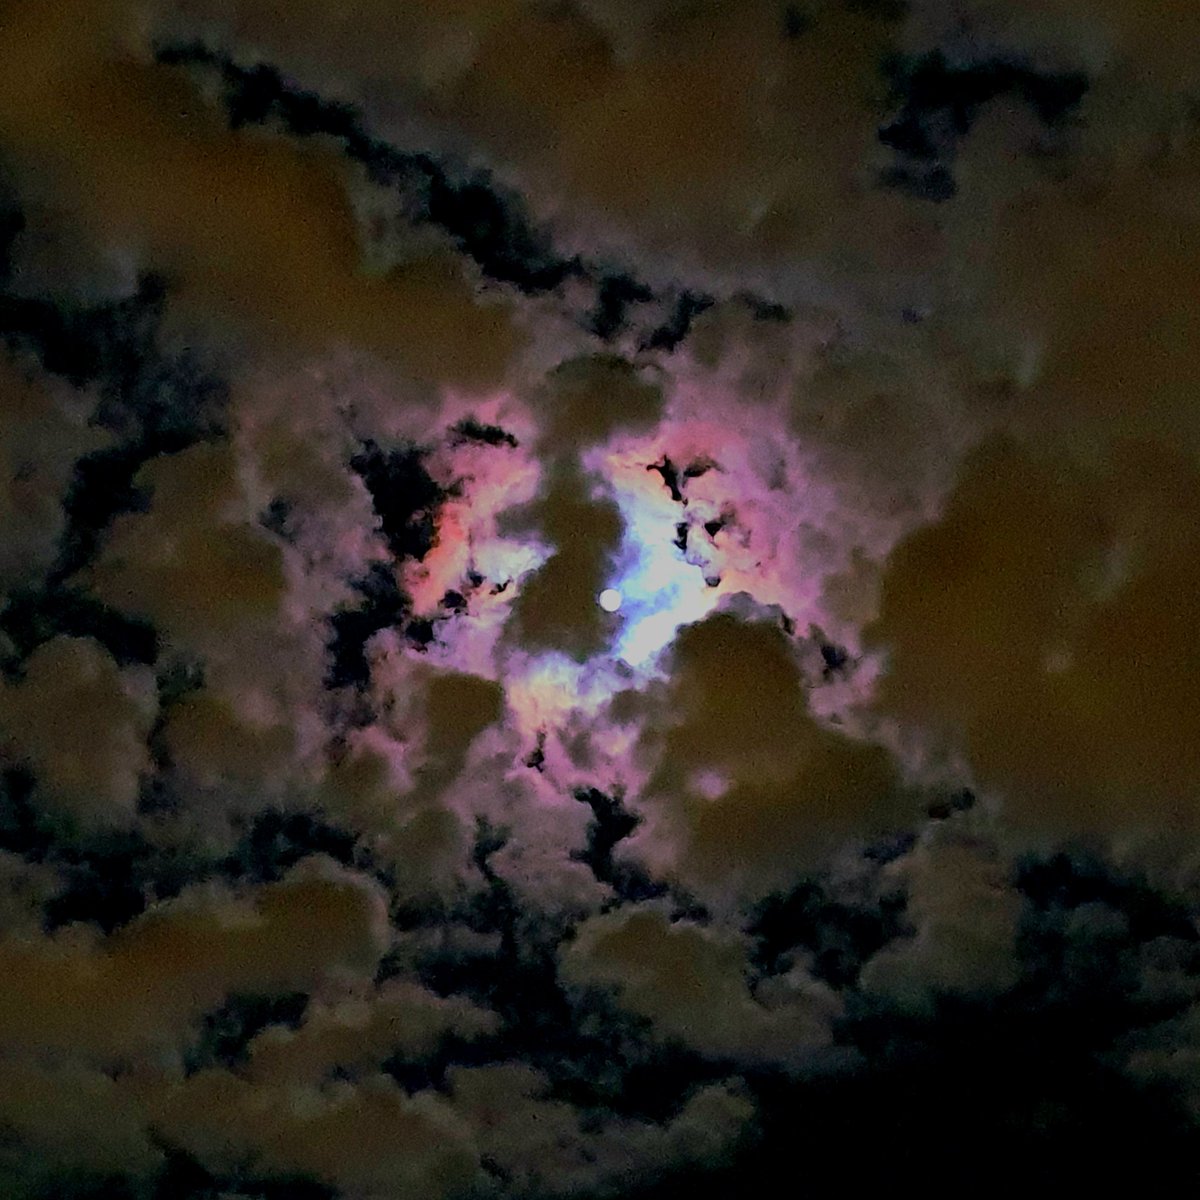 Arcobaleno lunare
un buio colorato
nella notte sognare
un mondo incantato

#CasaLettori @CasaLettori #scritturebrevi

#istantaneeDa Bollate, Milano #inLombardia

#ThePhotoHour #StormHour